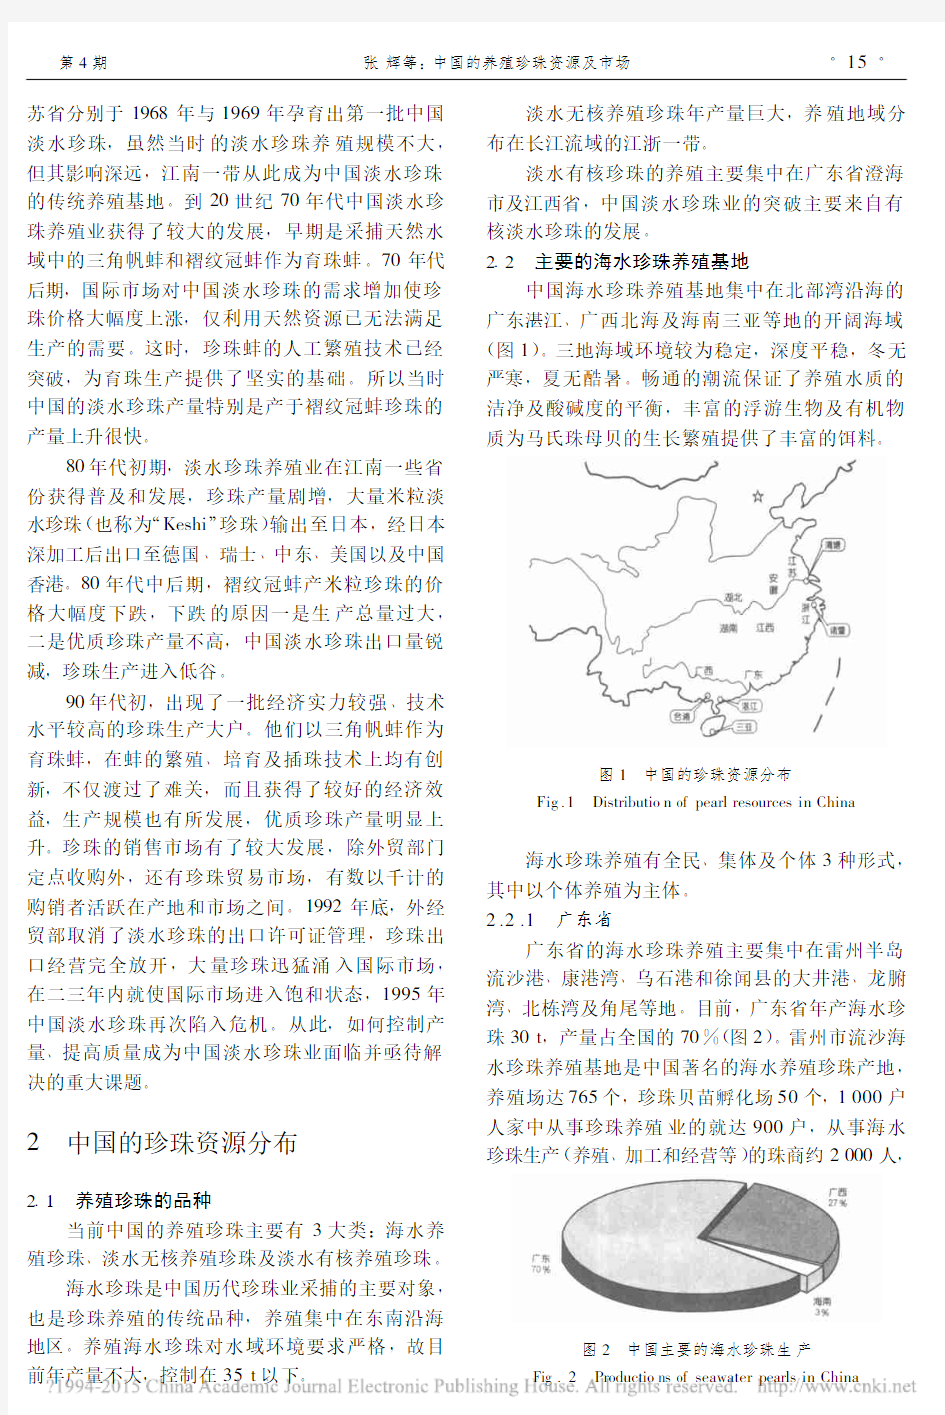 35中国的养殖珍珠资源及市场_张辉